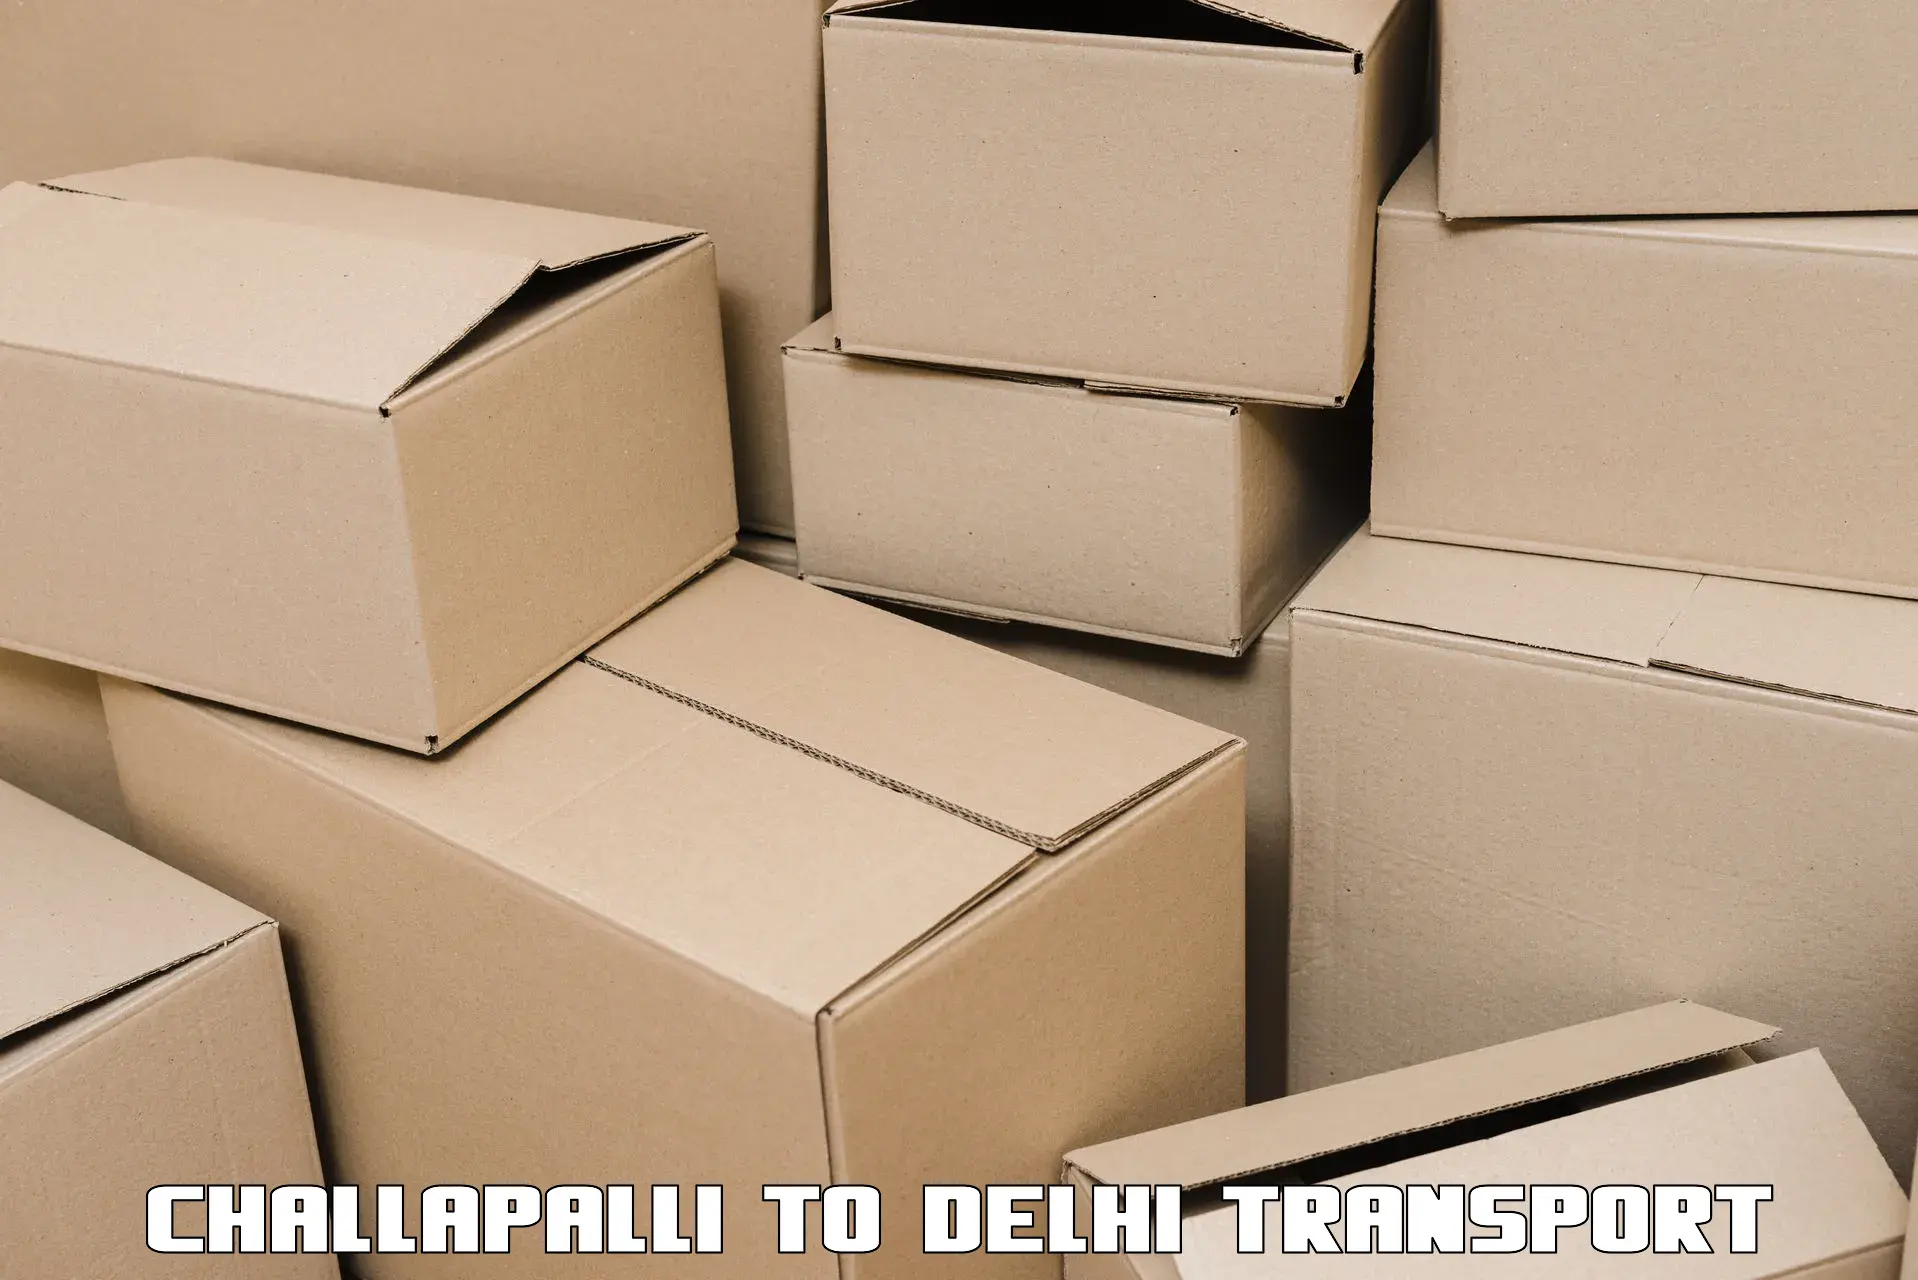 Sending bike to another city Challapalli to Jamia Millia Islamia New Delhi